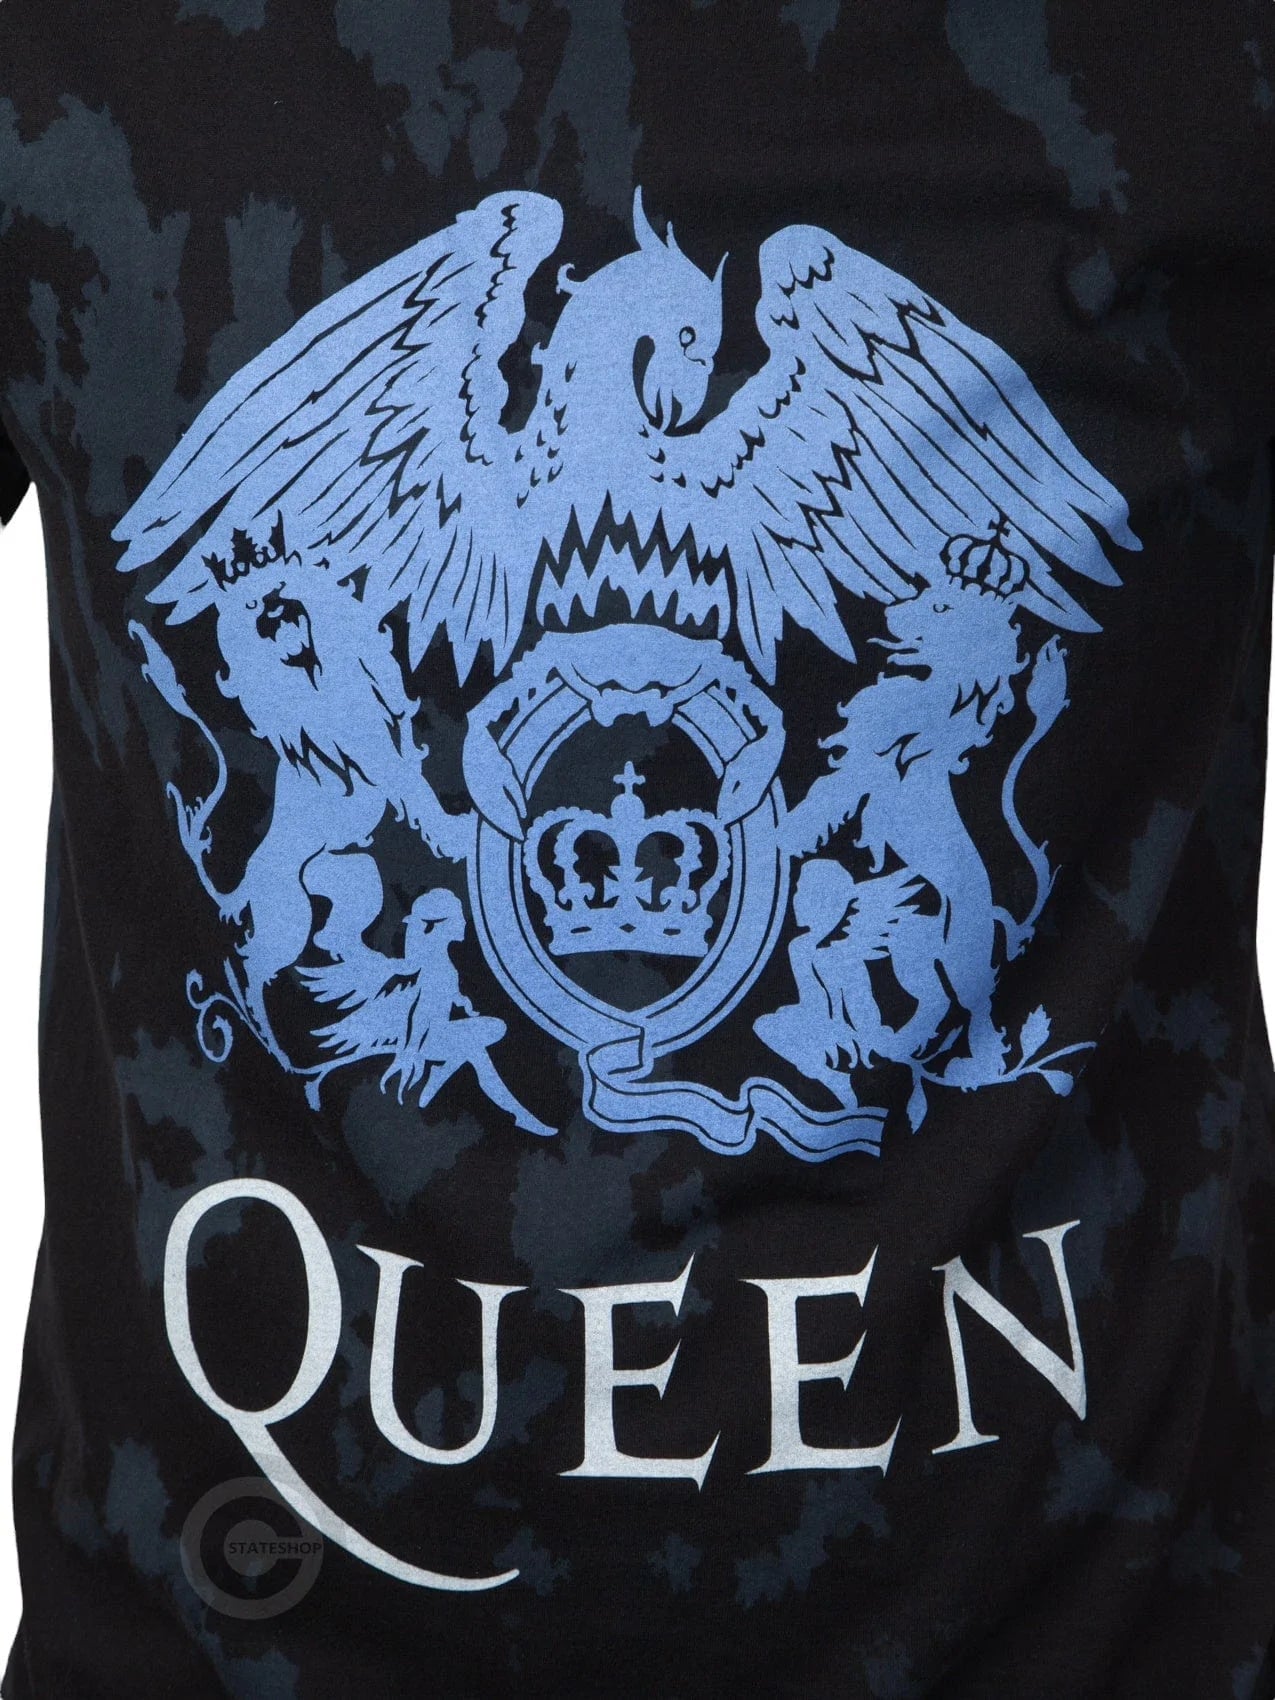 RockstarzT-shirt Queen "Blue Crest" Dip Dye, Black